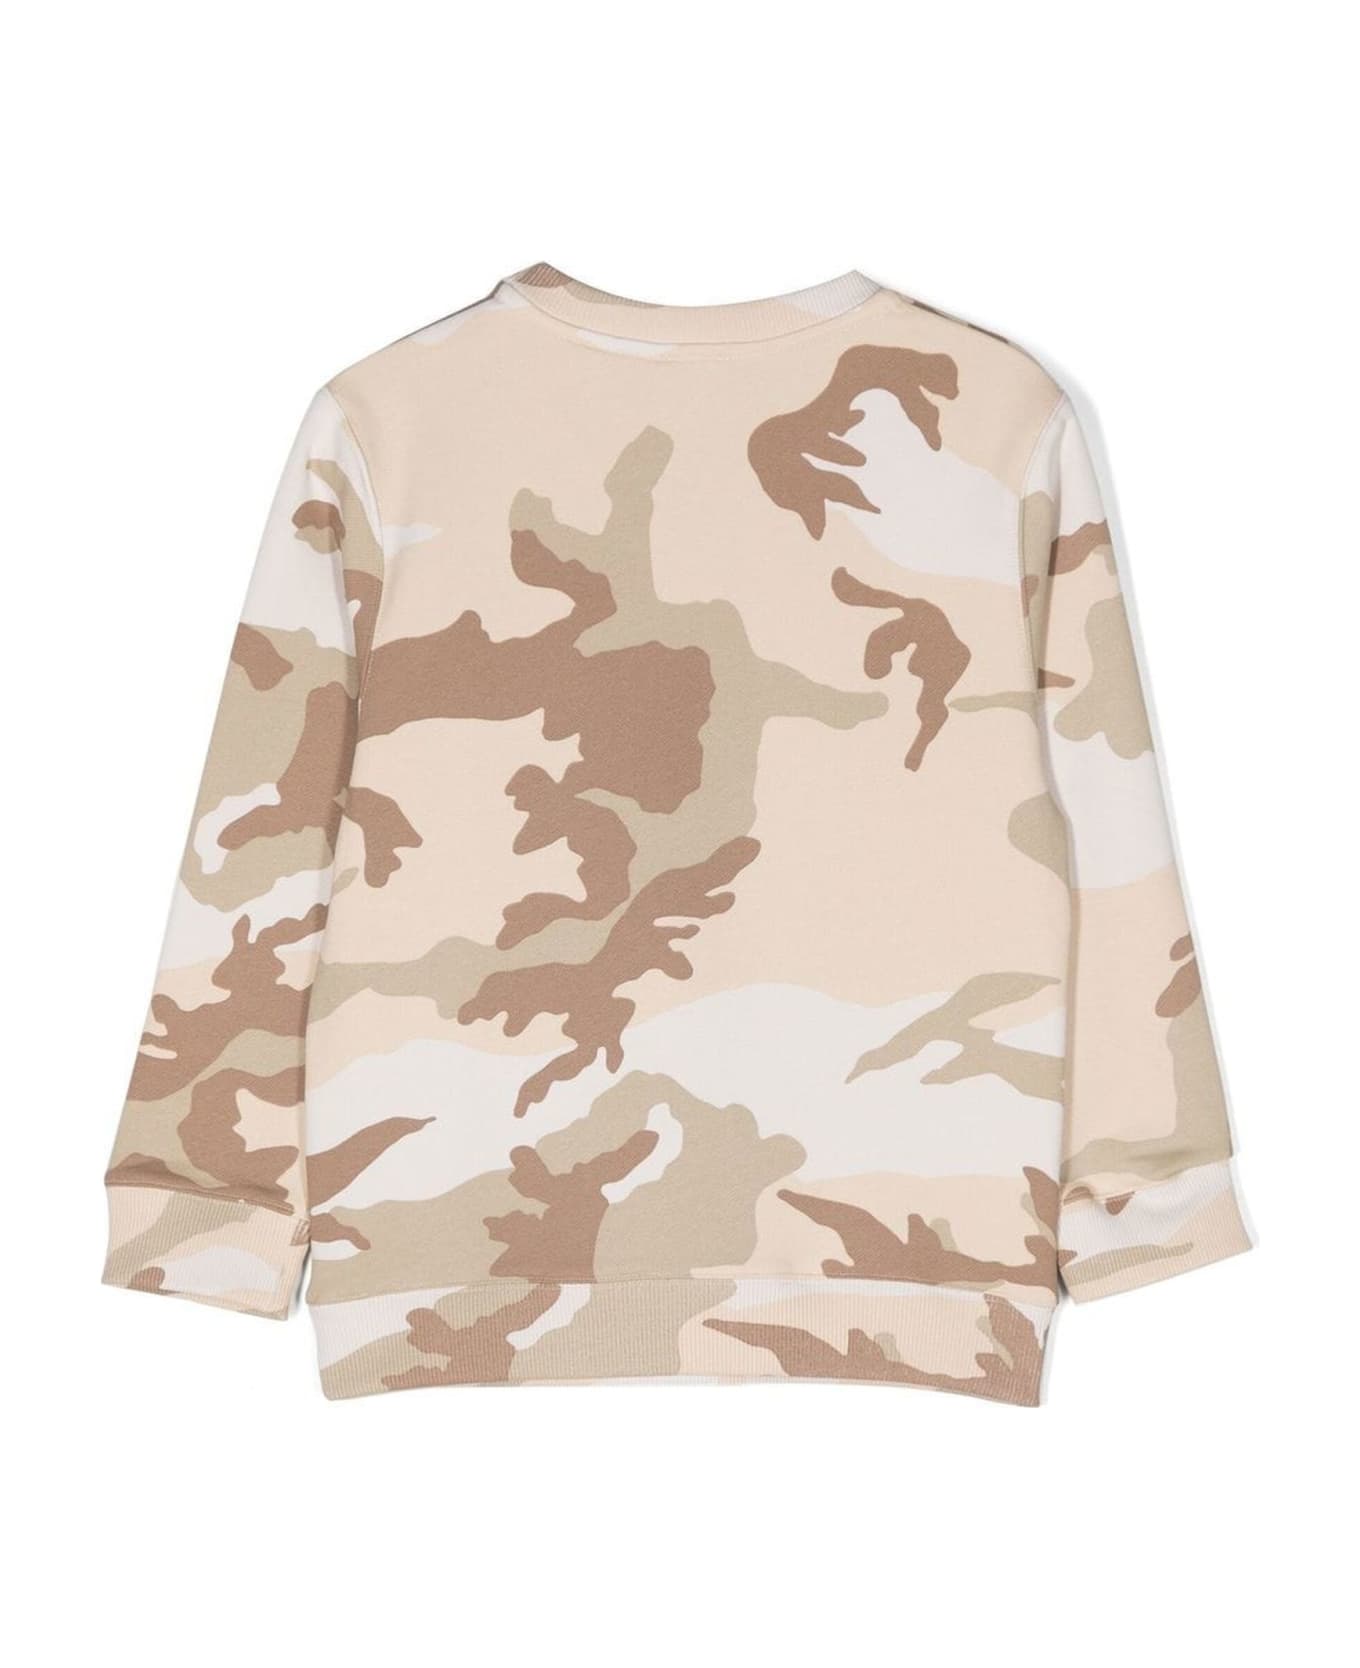 Givenchy Beige Cotton Sweatshirt - Beige